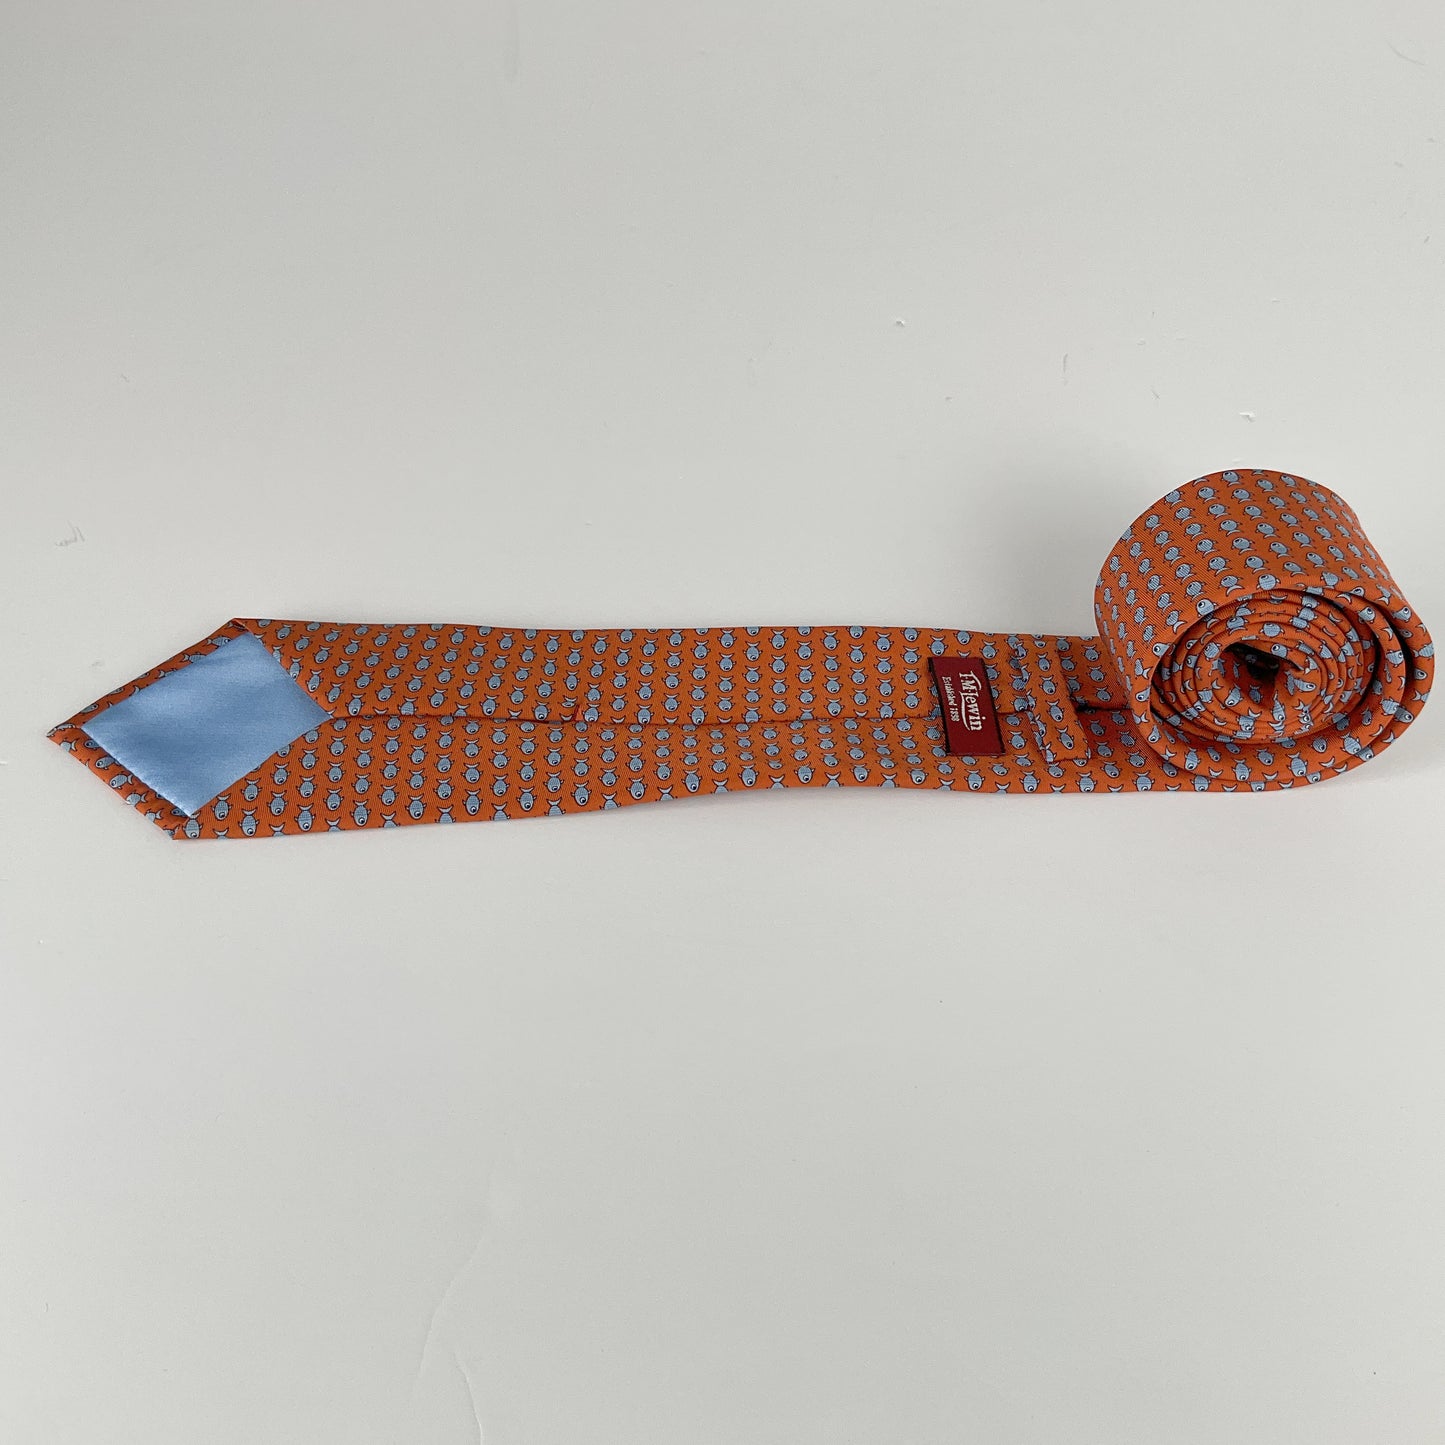 Tm Lewin - Hand Made Fish Pattern Silk Tie